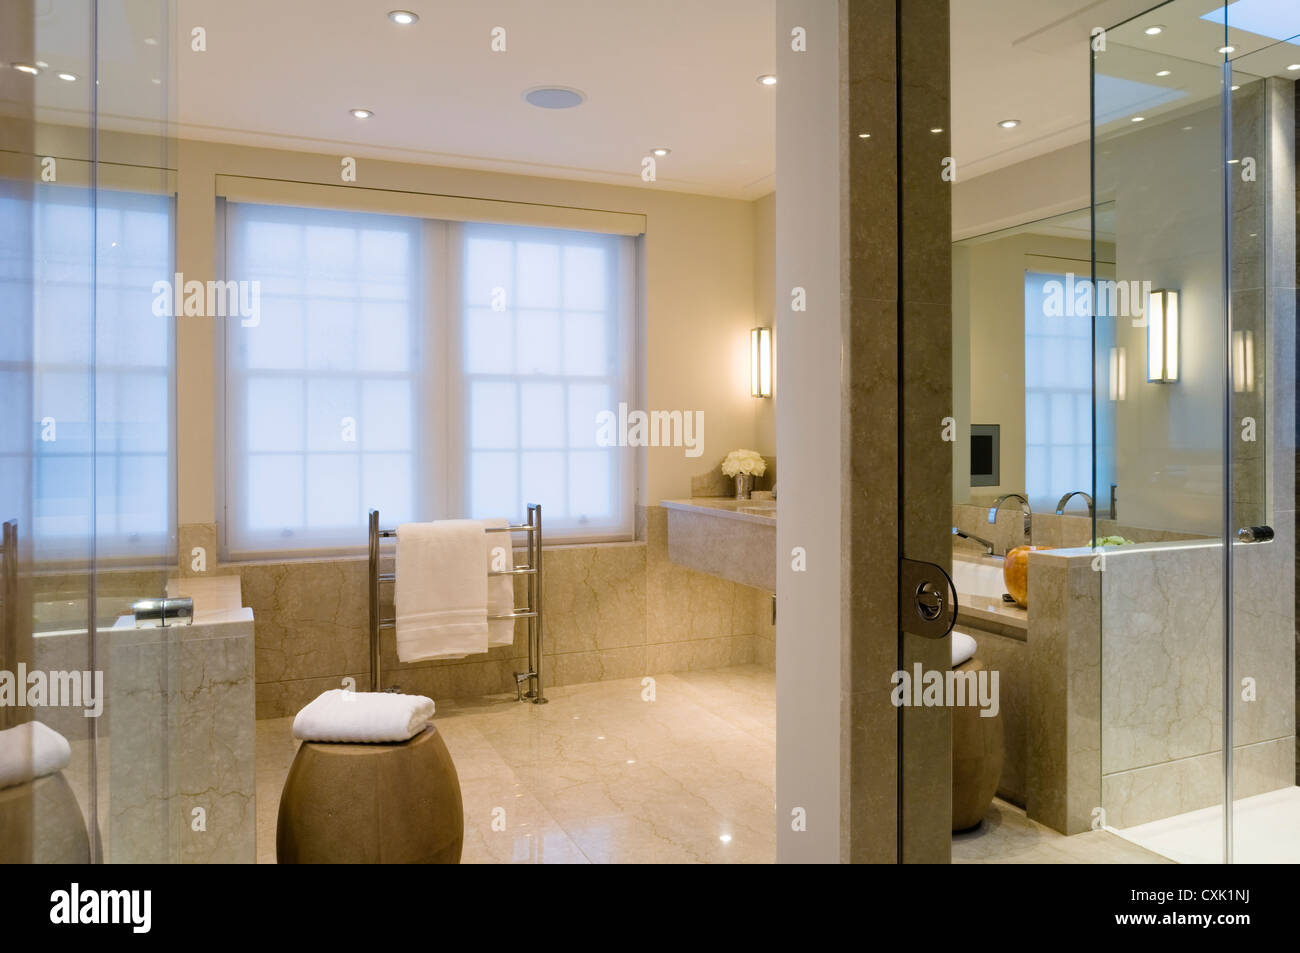 La couleur Couleurs d'intérieur salle de bain éclairée lumière serviette pliée traitement fenêtre stores à rouleau sèche-serviettes réflexion spacieux Banque D'Images